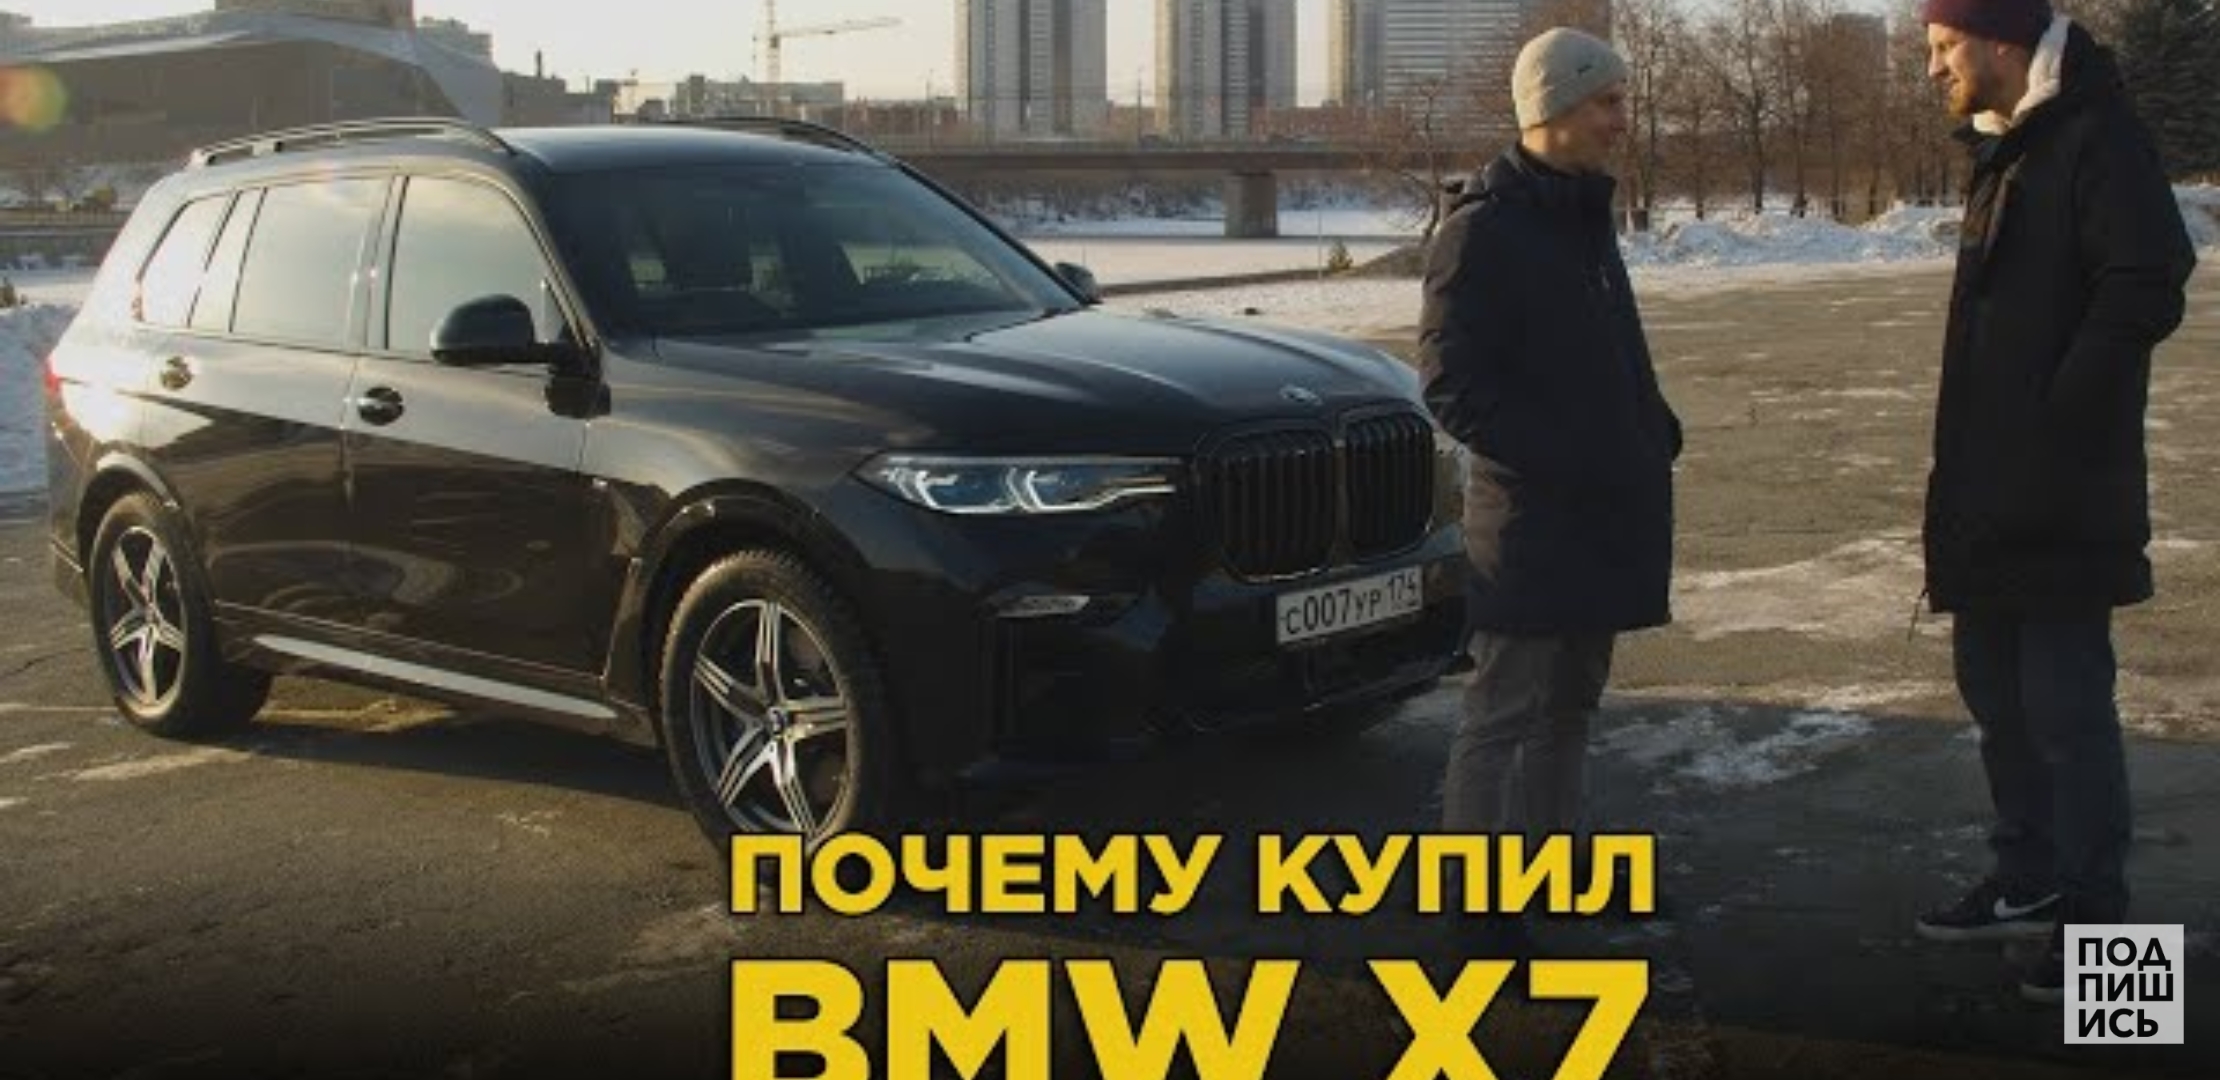 Анонс видео-теста Почему купил BMW X7 | Отзыв владельца БМВ Х 7 дизель | Она такая большая и тихая!